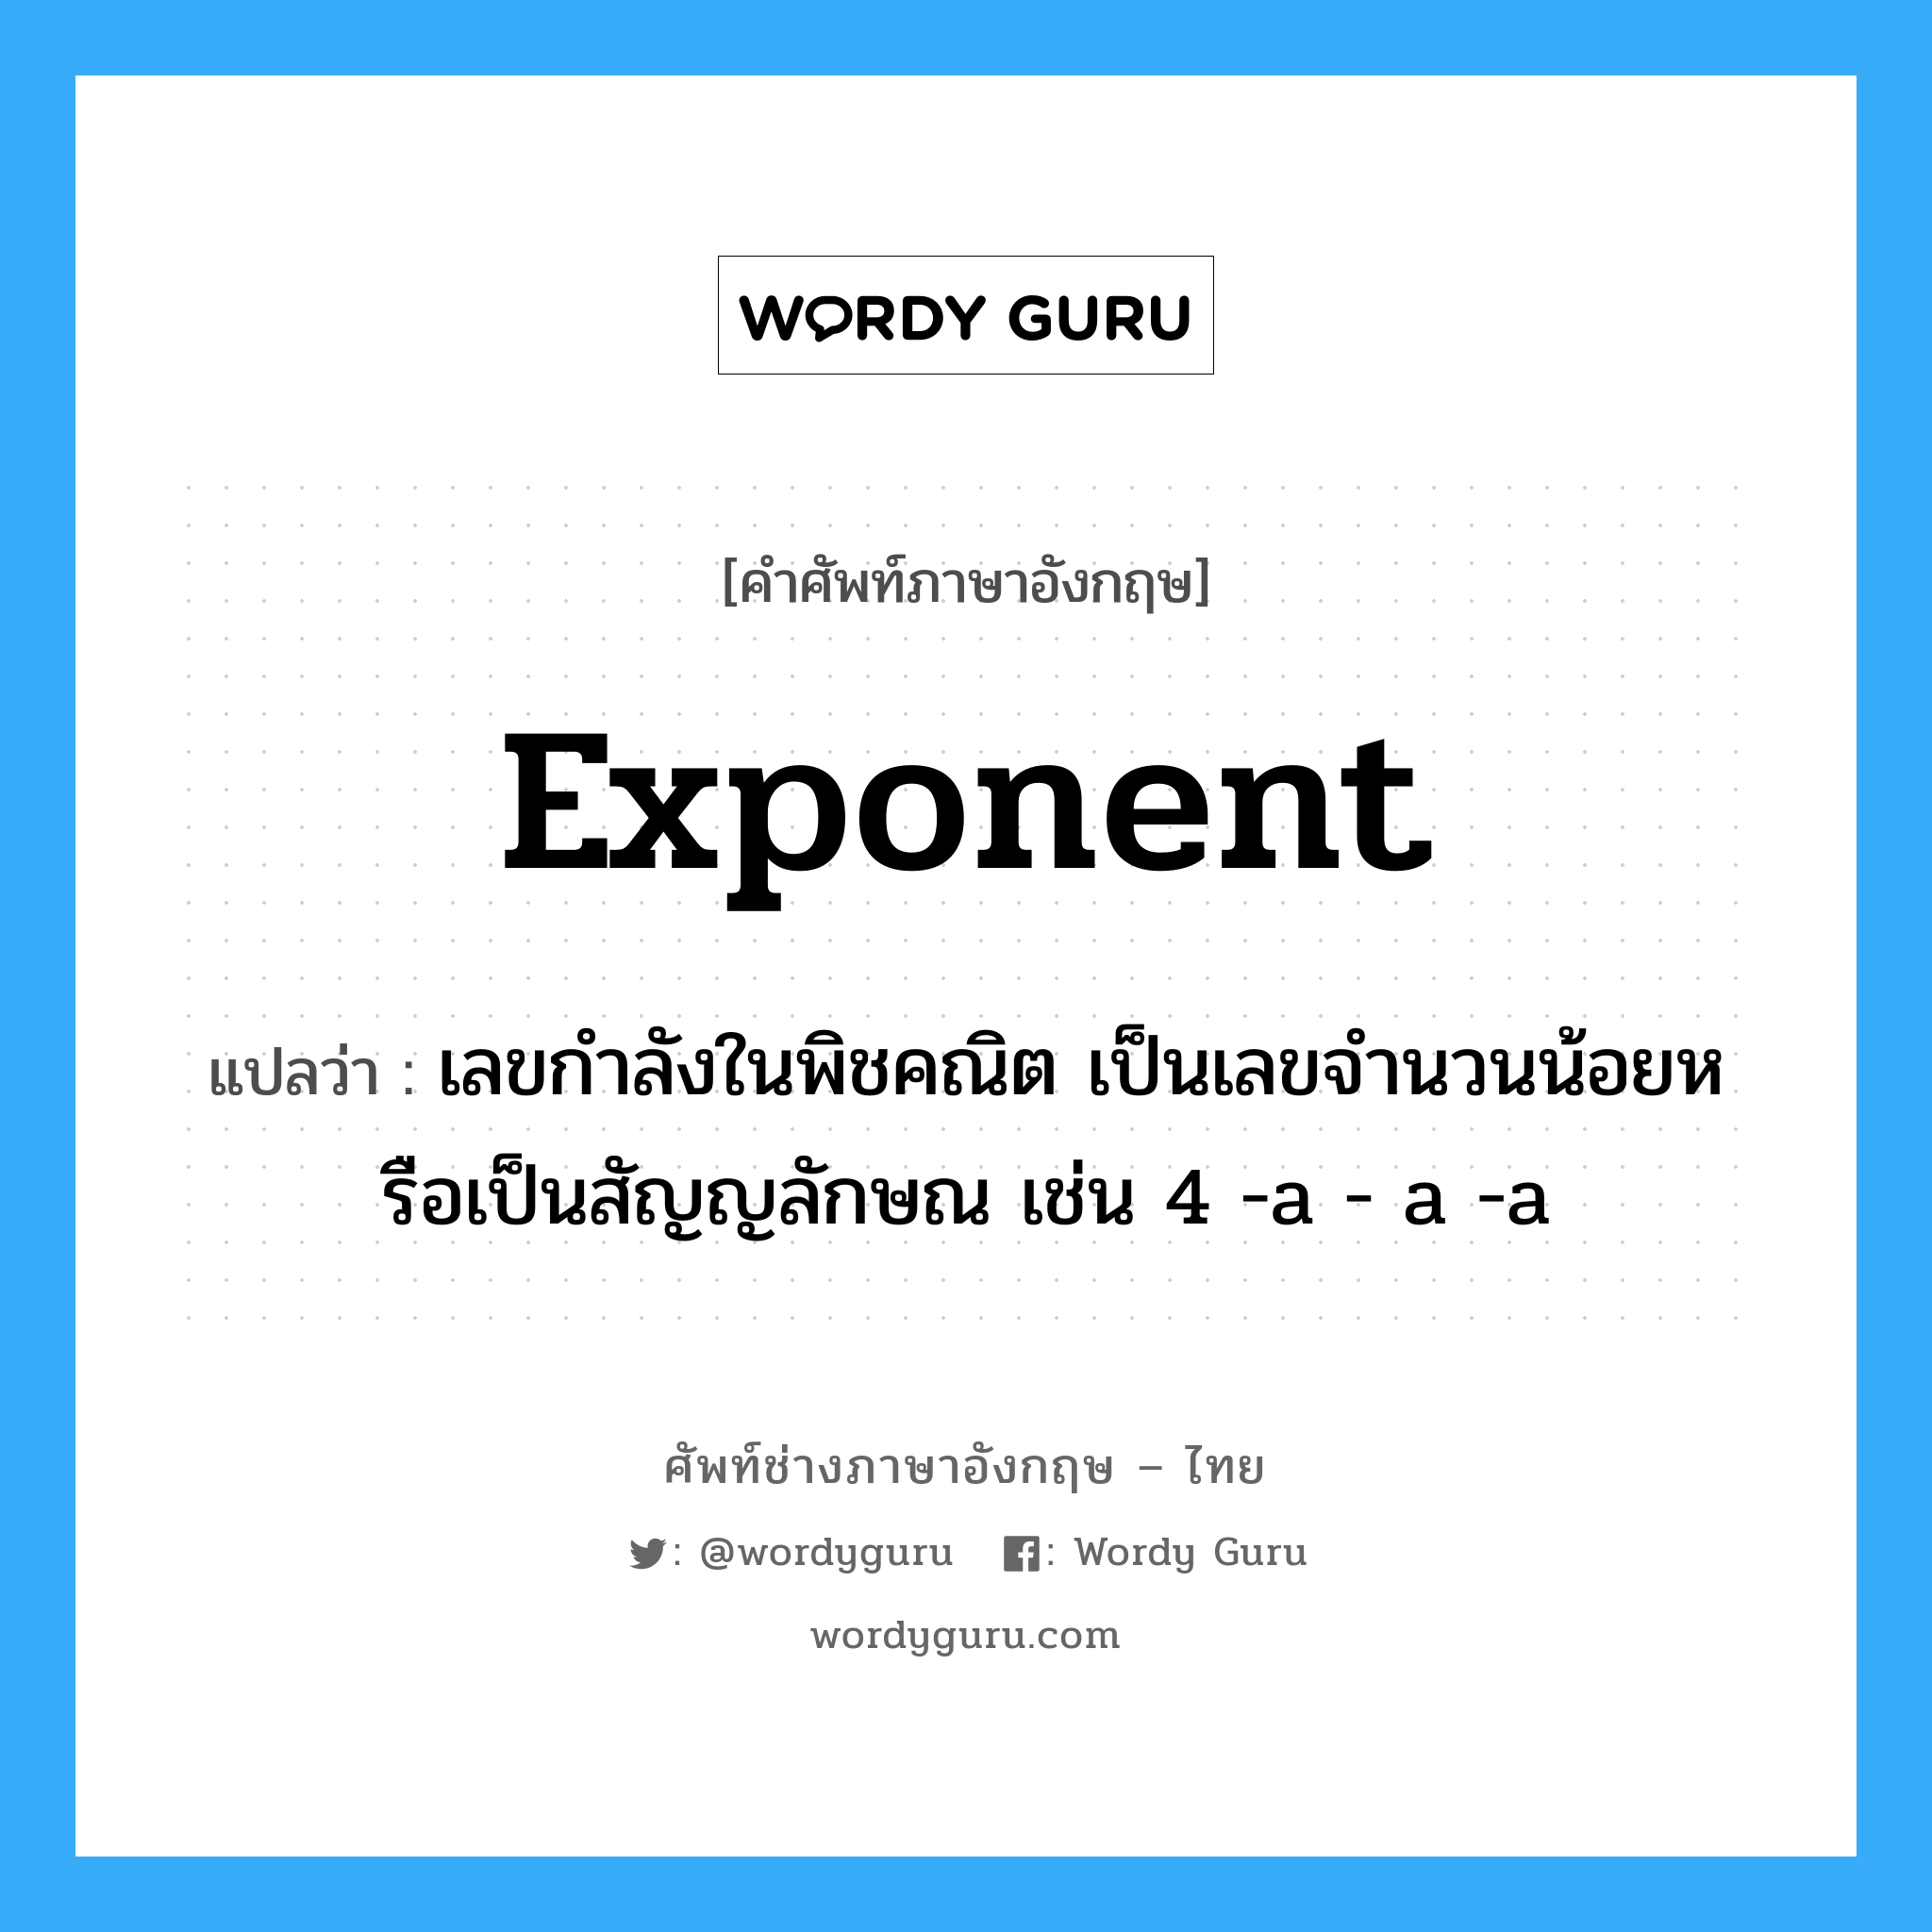 exponent แปลว่า?, คำศัพท์ช่างภาษาอังกฤษ - ไทย exponent คำศัพท์ภาษาอังกฤษ exponent แปลว่า เลขกำลังในพิชคณิต เป็นเลขจำนวนน้อยหรือเป็นสัญญลักษณ เช่น 4 -a - a -a